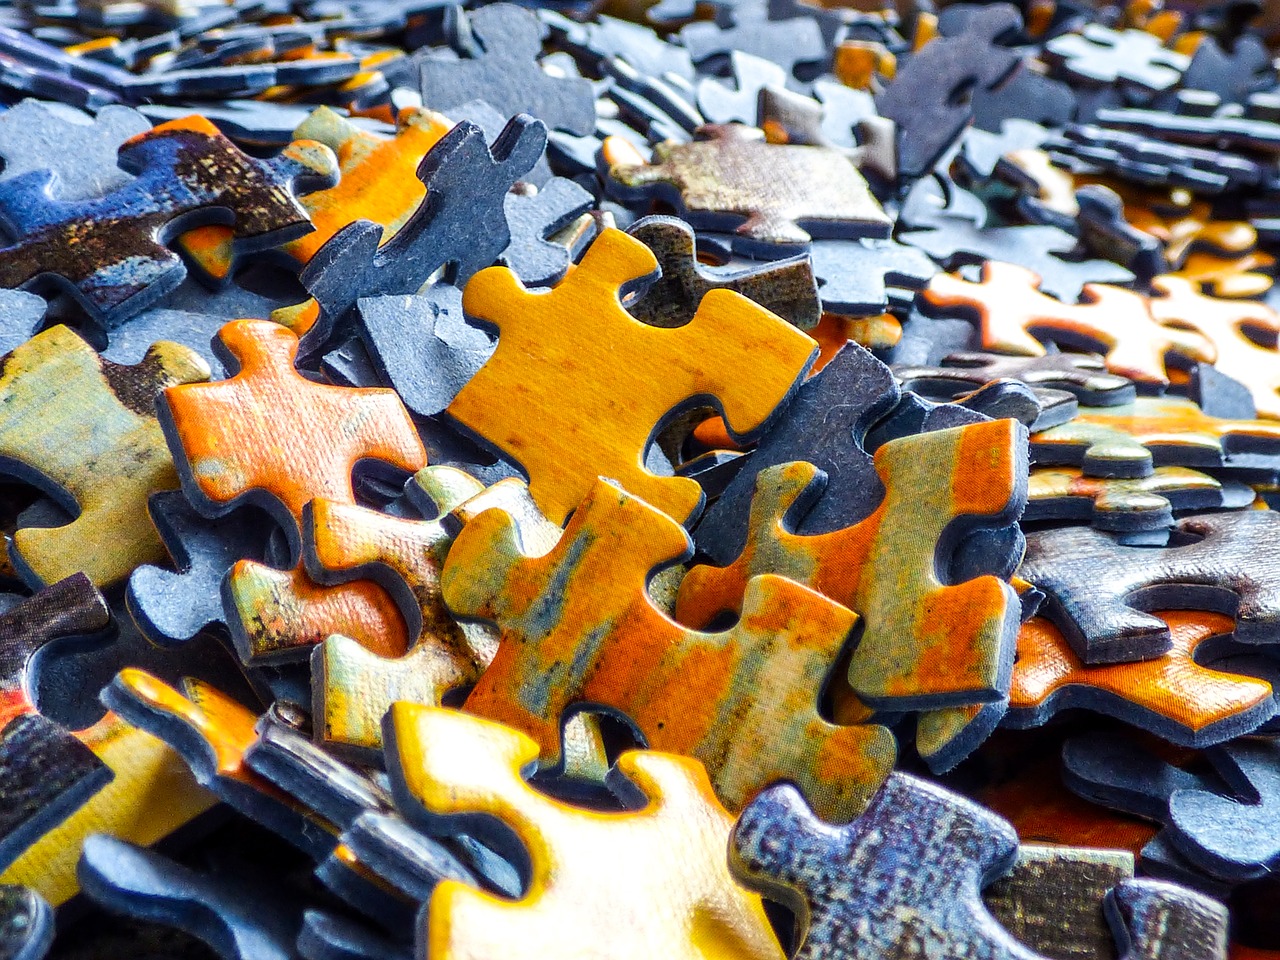 Puzzle pieces is a pile